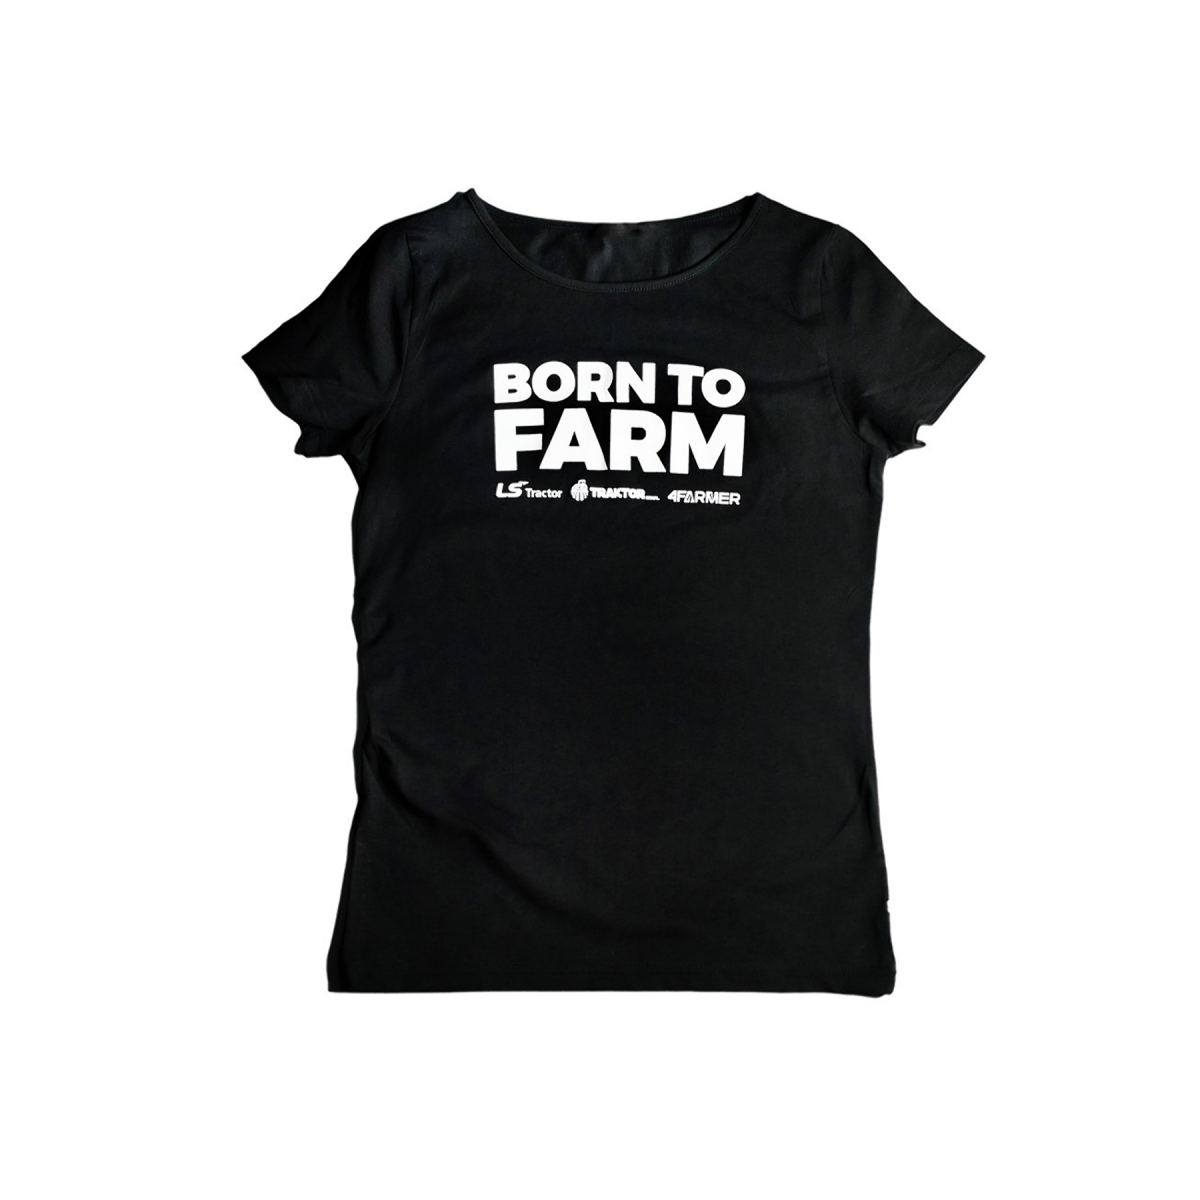 T-shirt "BORN TO FARM" pour femme